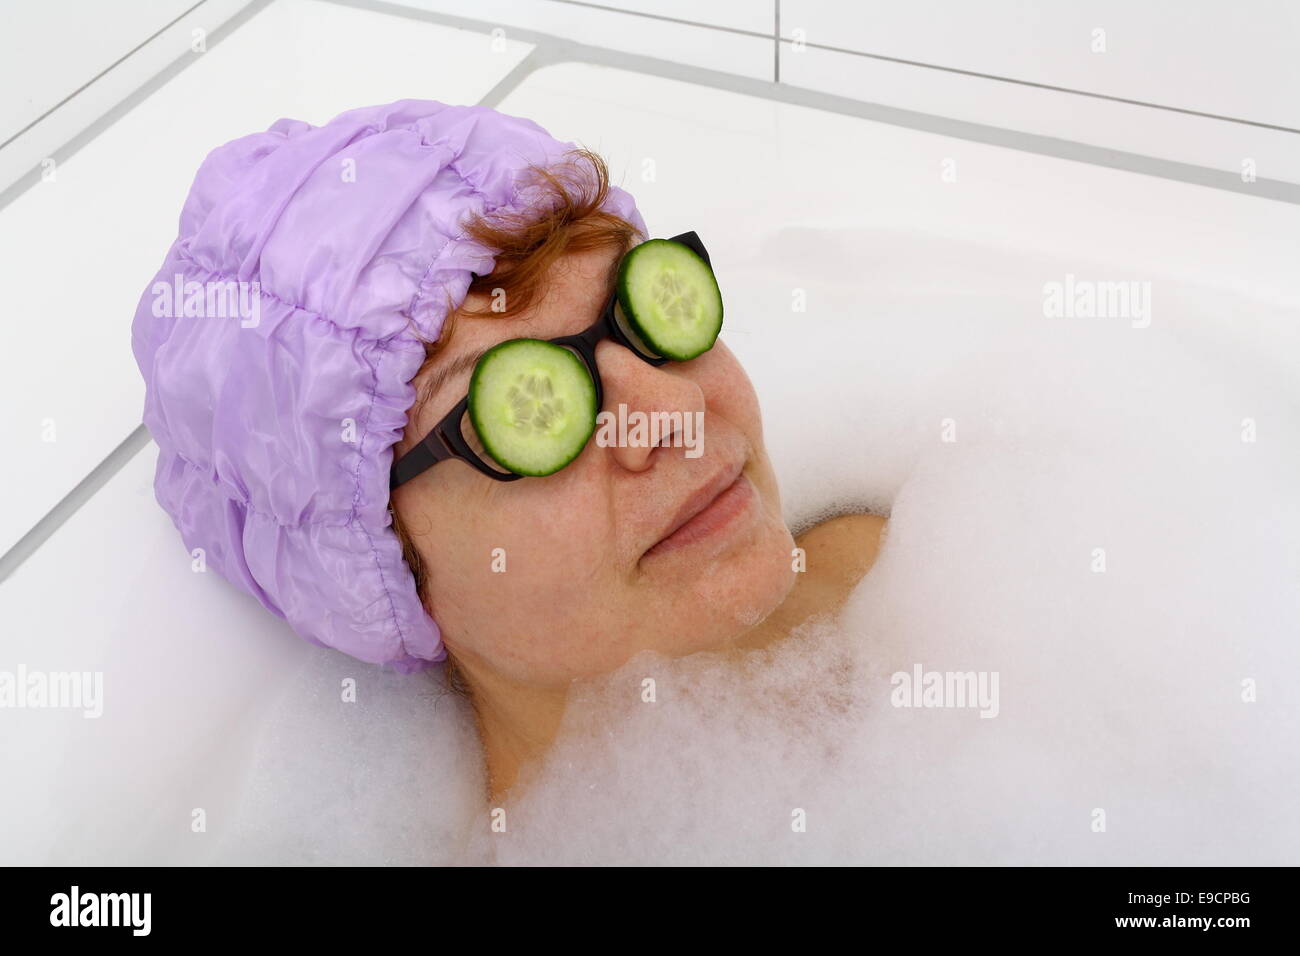 Reife Frau in der Badewanne mit Gurkenscheiben auf das Spektakel, Verfahren Stockfoto